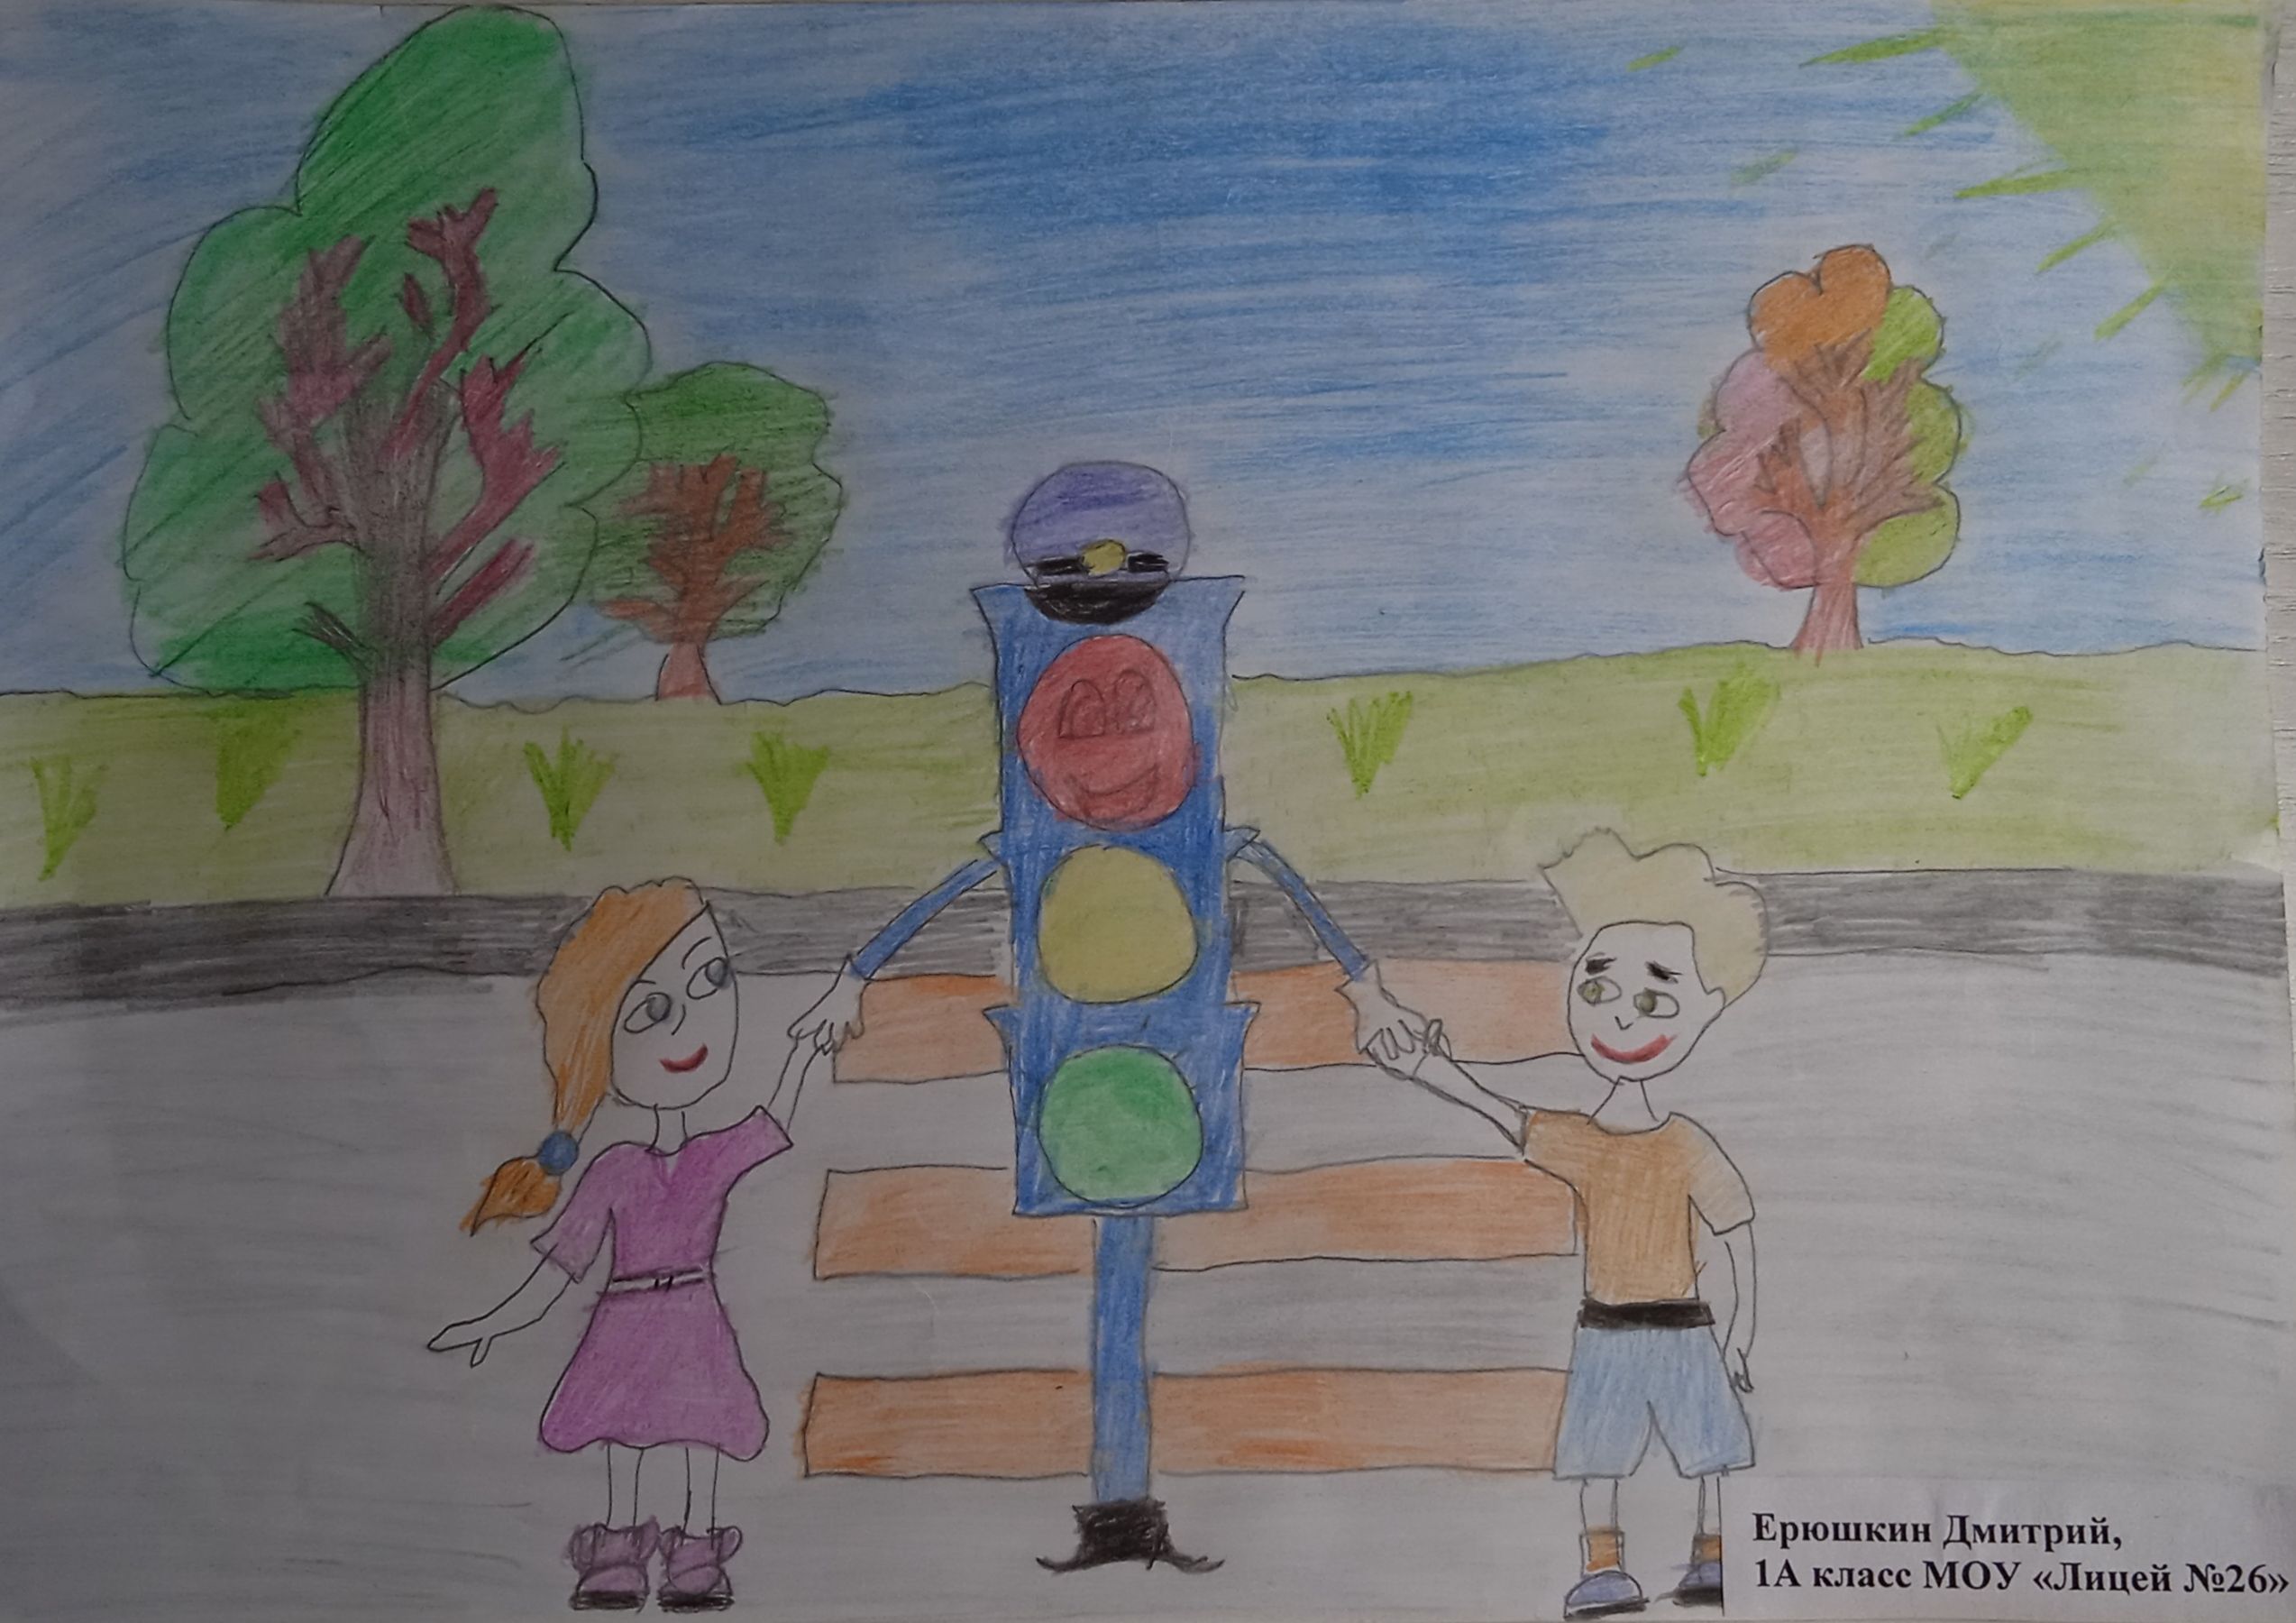 Безопасная дорога детям рисунки детский сад